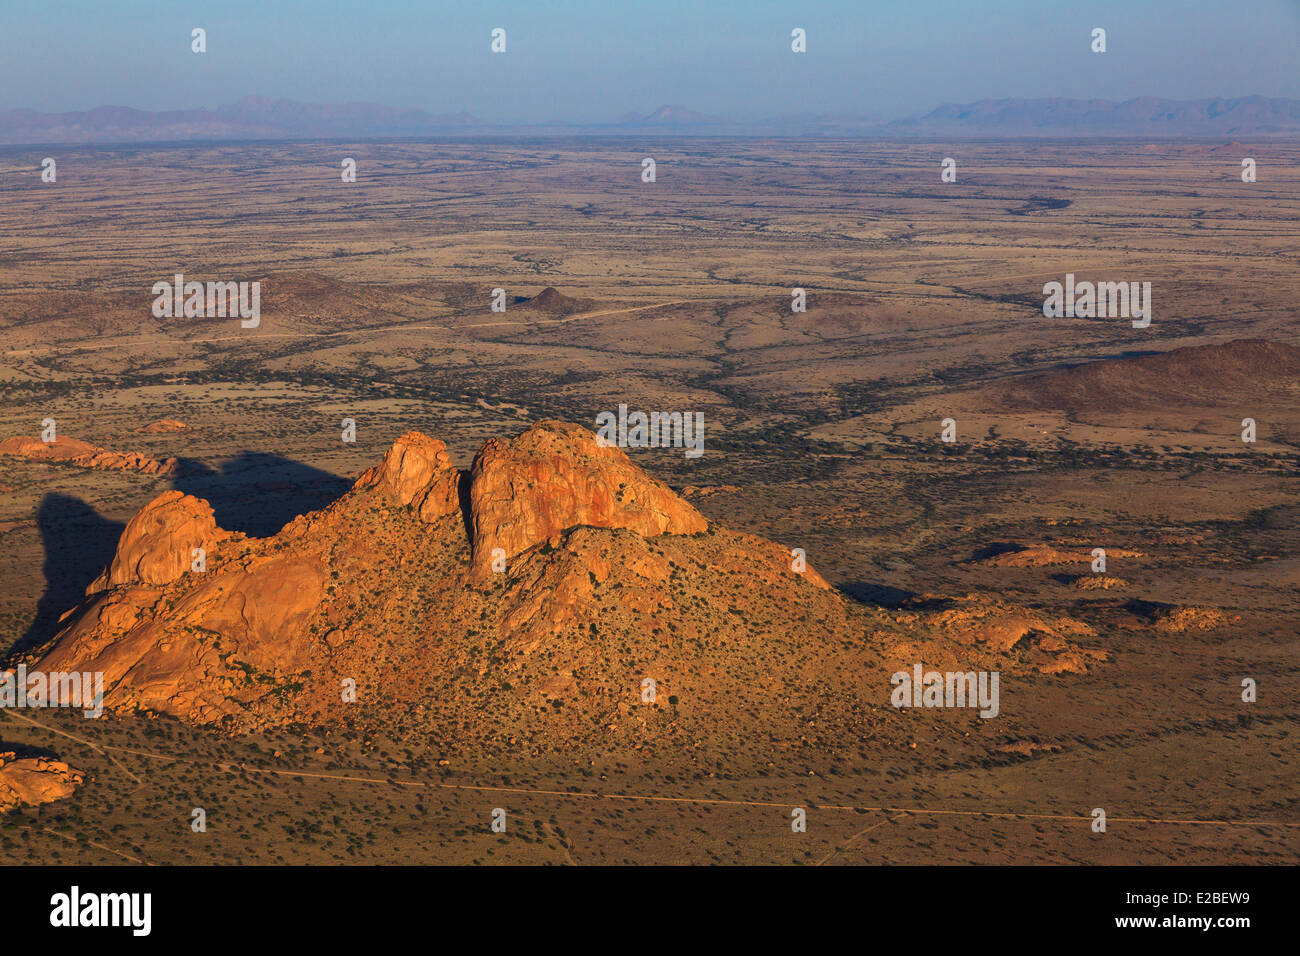 Namibia, Erongo Region, Damaraland, the Spitzkoppe or Spitzkop (1784 m), granite mountain in the Namib Desert (aerial view) Stock Photo